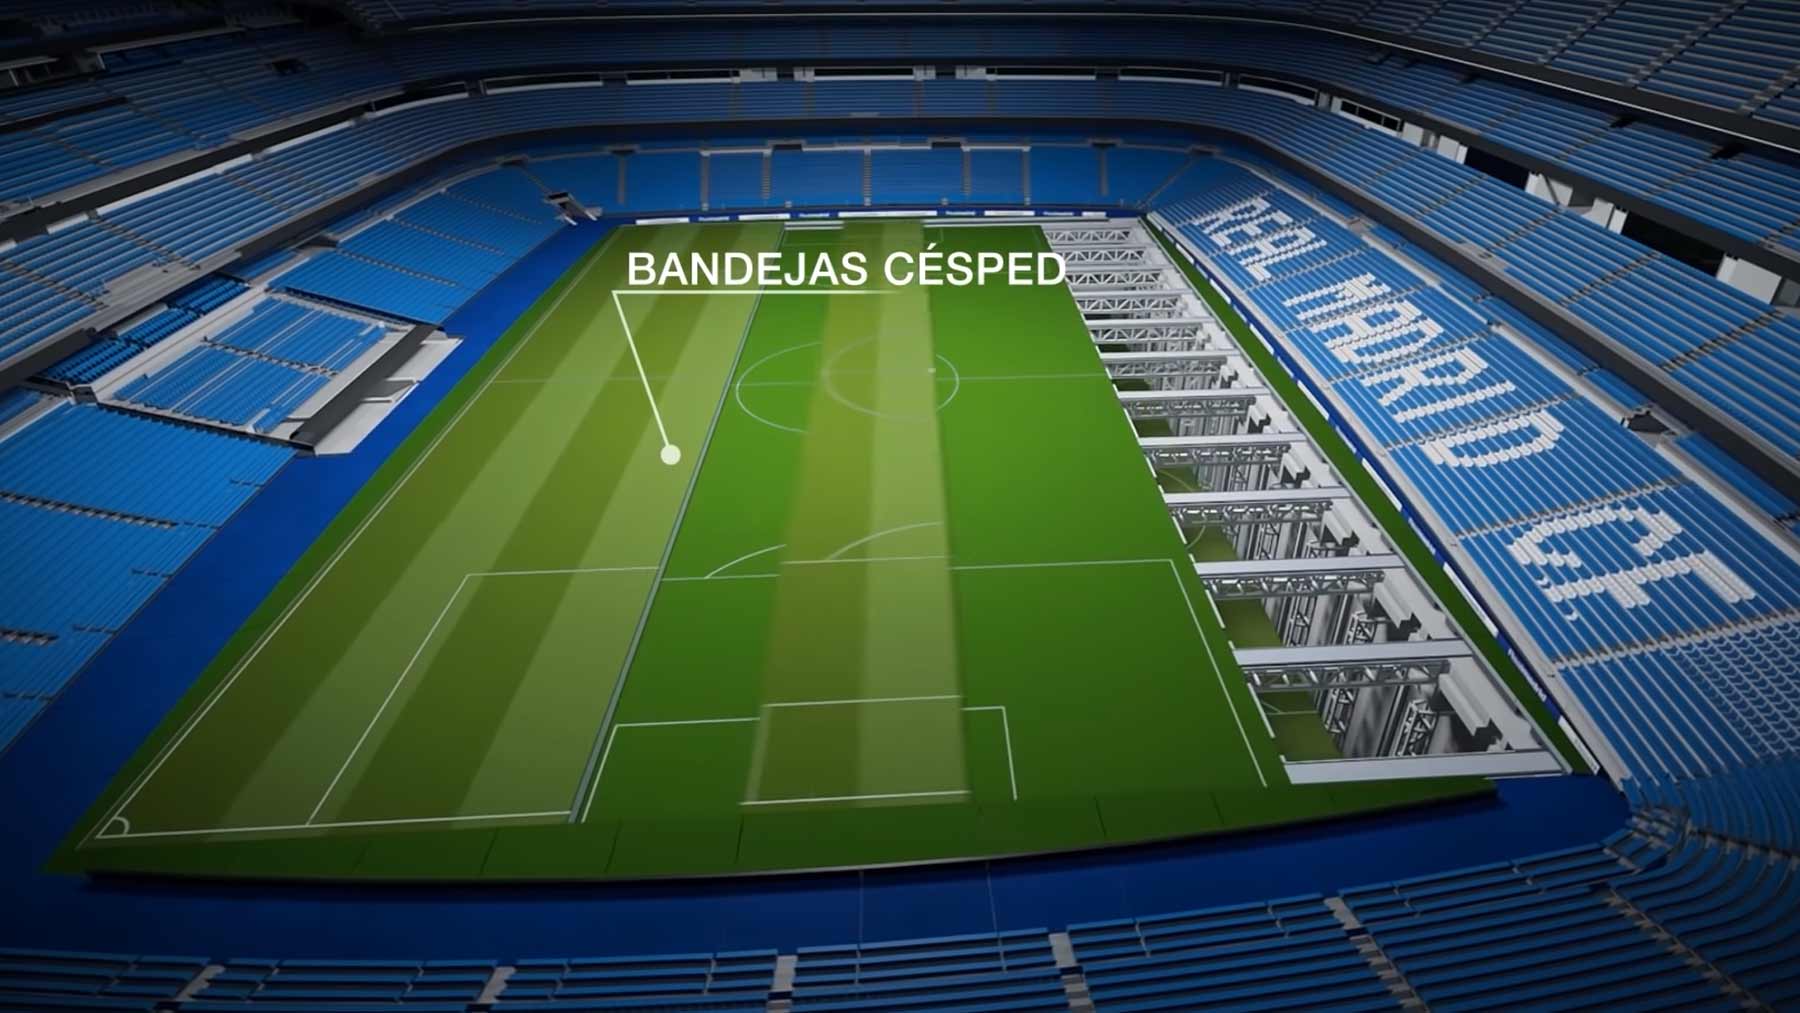 Das neue Stadion von Real Madrid steckt voller technischer Finessen neue-stadion-real-madrid-2022-estadio-bernabeu 